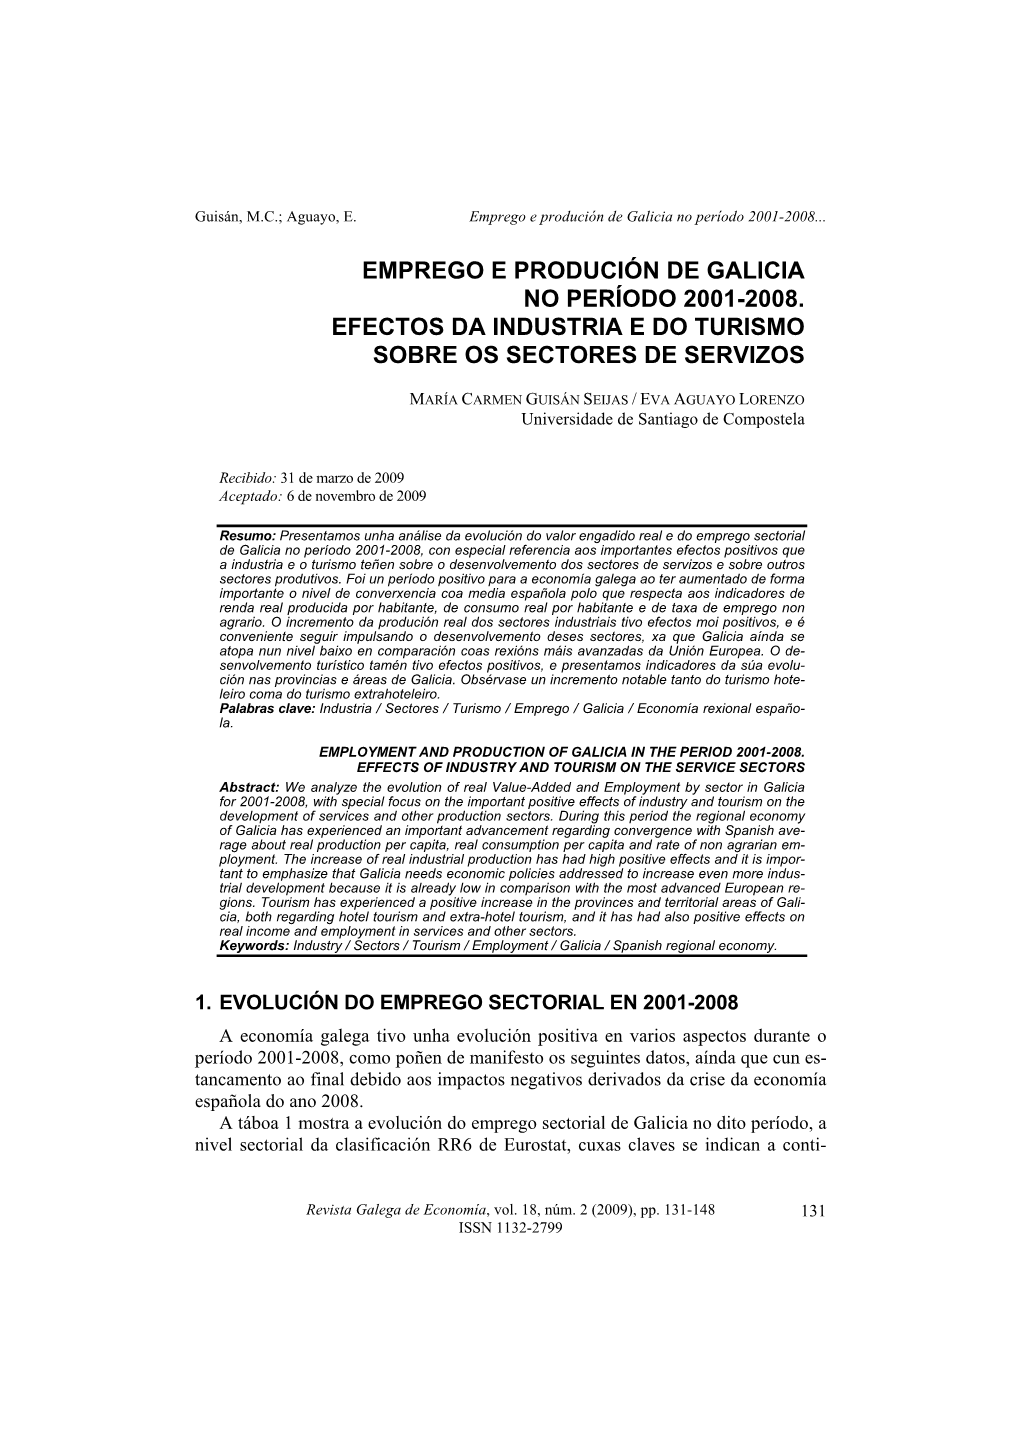 Emprego E Produción De Galicia No Período 2001-2008